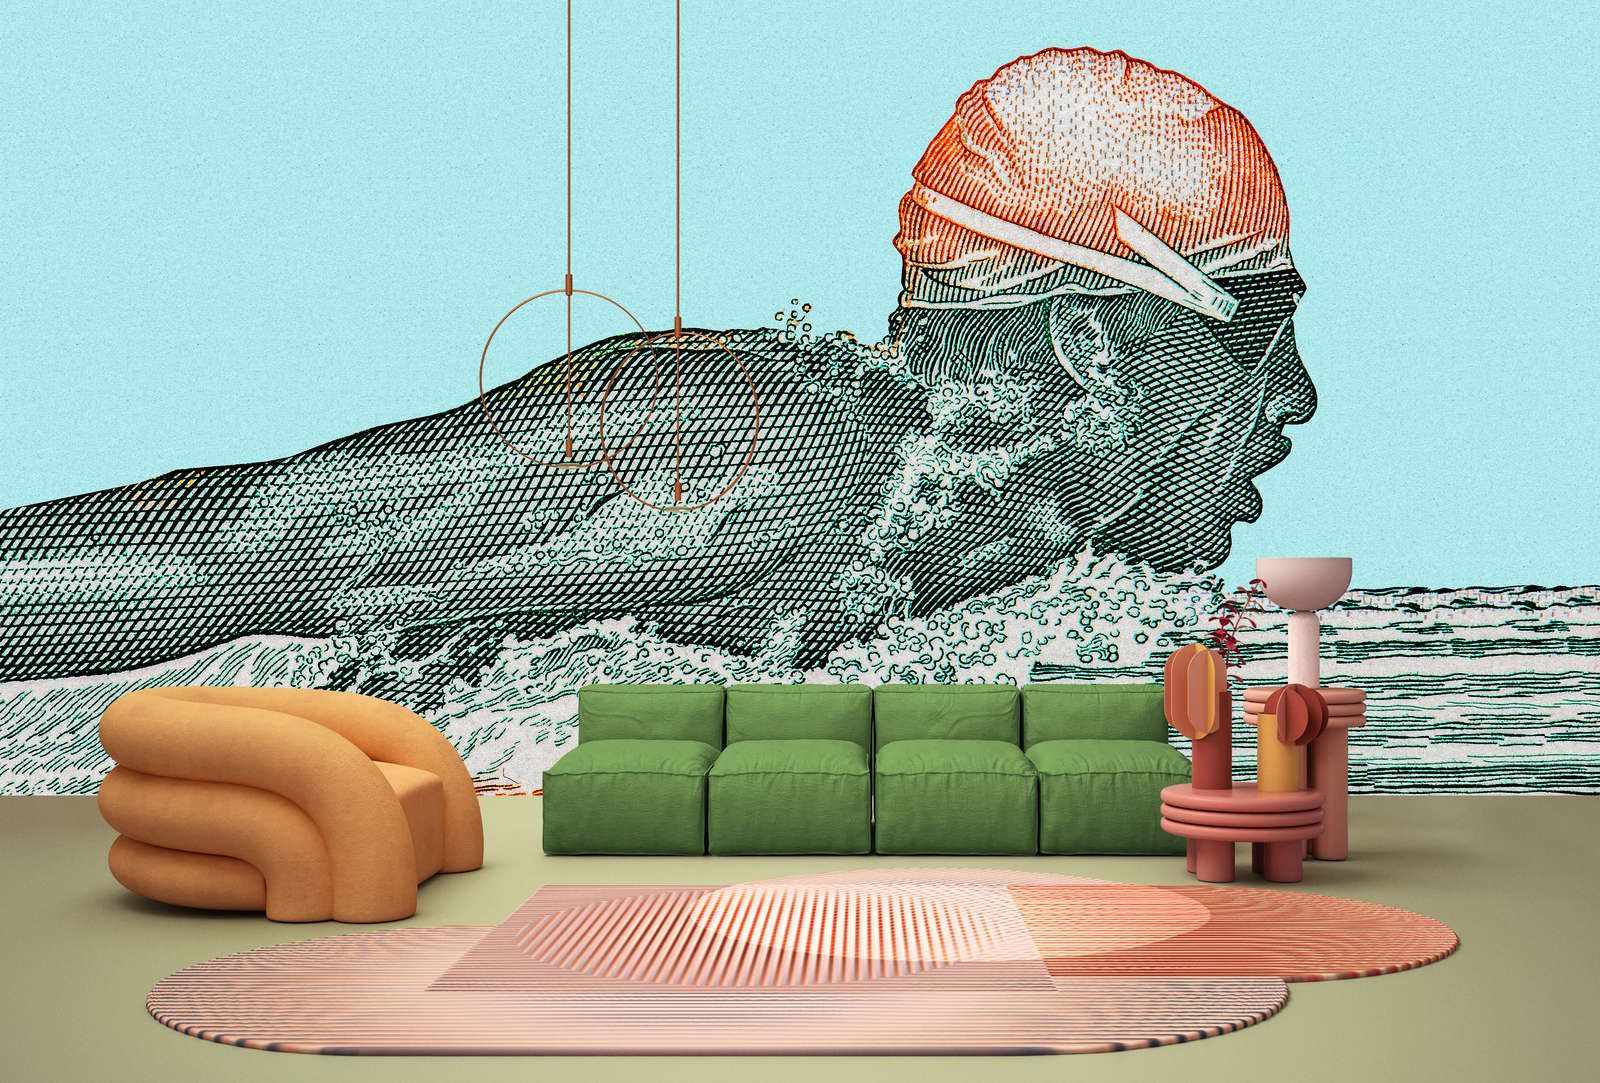             papier peint en papier panoramique »aquaman« - nageur au design pixelisé - pétrole avec structure en papier kraft | intissé légèrement structuré
        